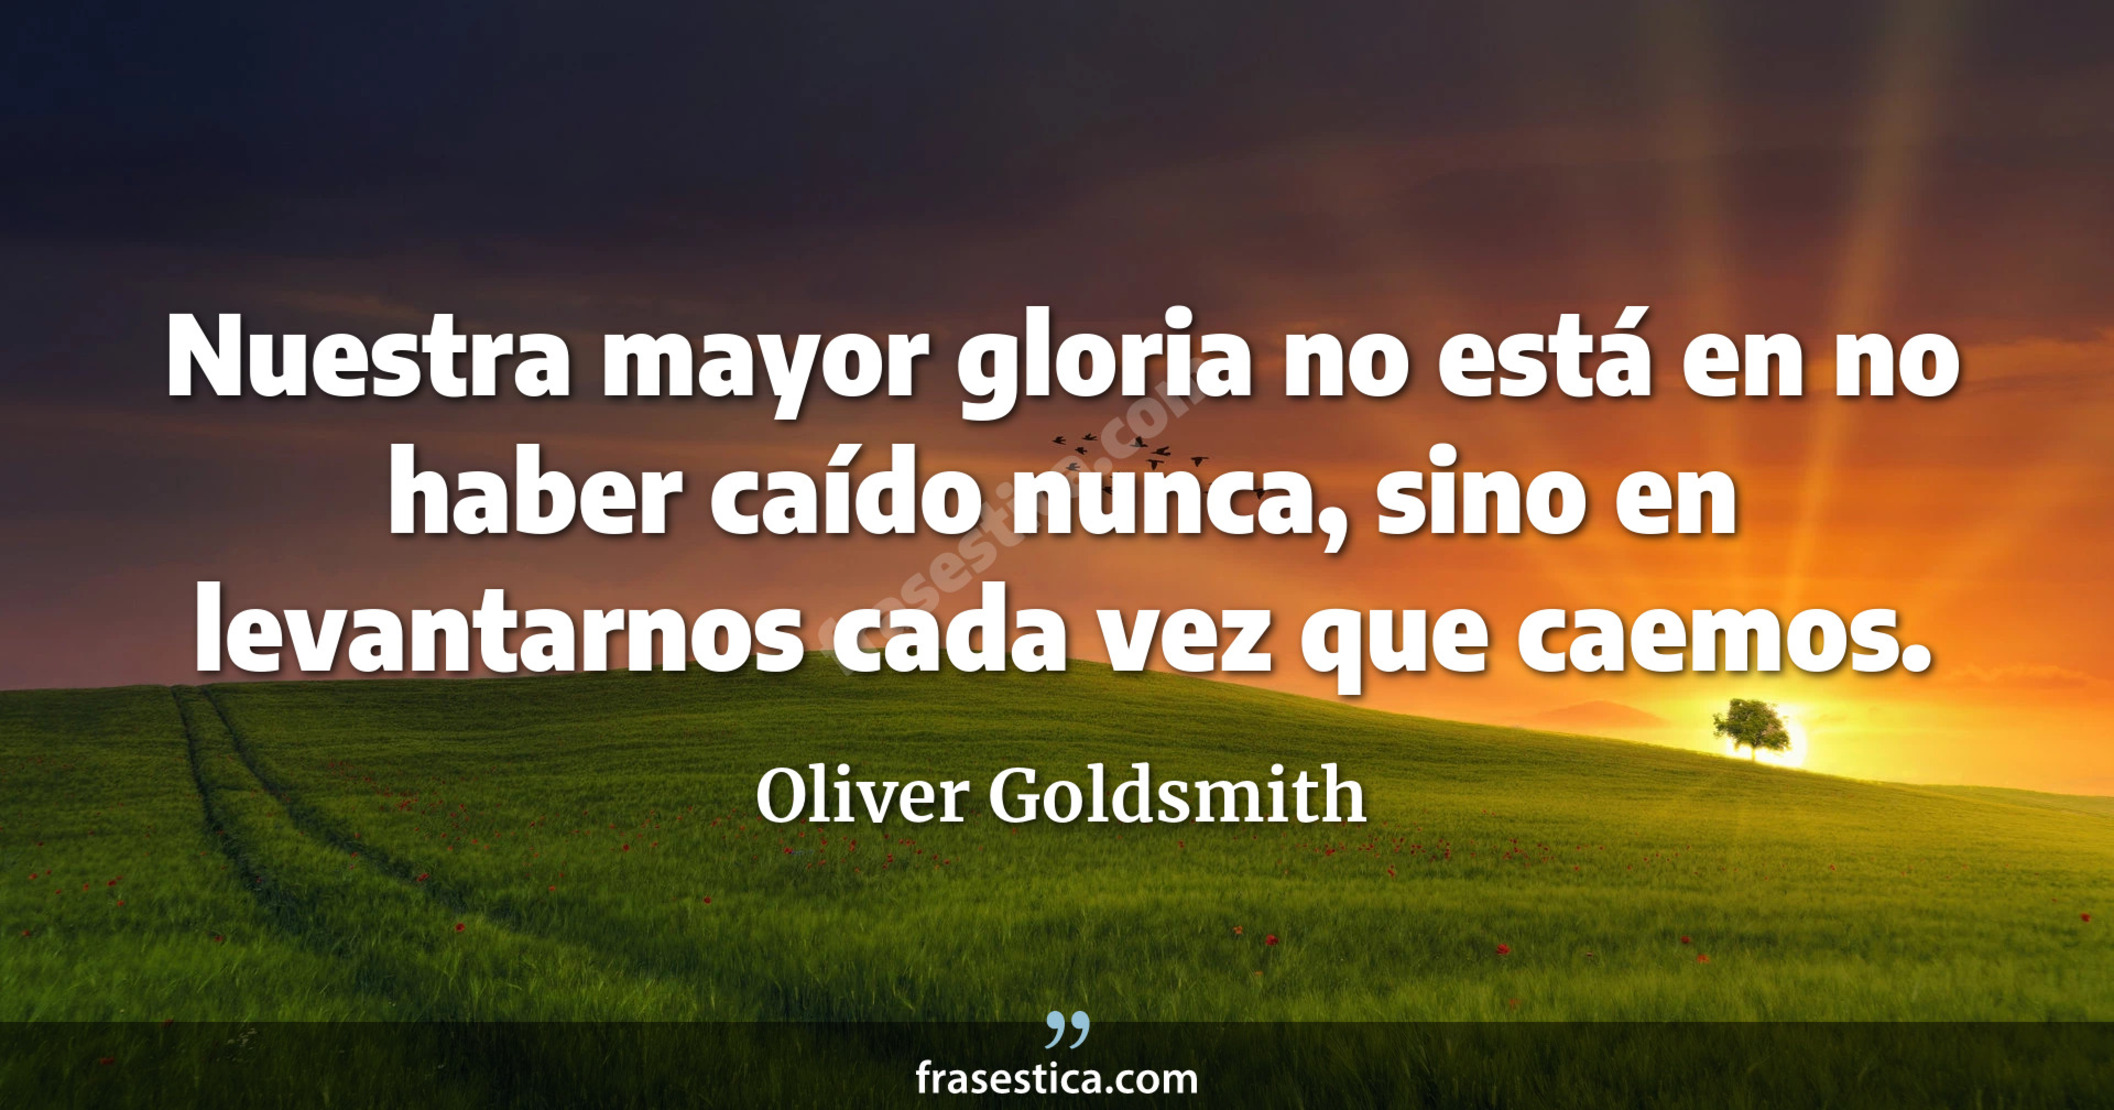 Nuestra mayor gloria no está en no haber caído nunca, sino en levantarnos cada vez que caemos. - Oliver Goldsmith